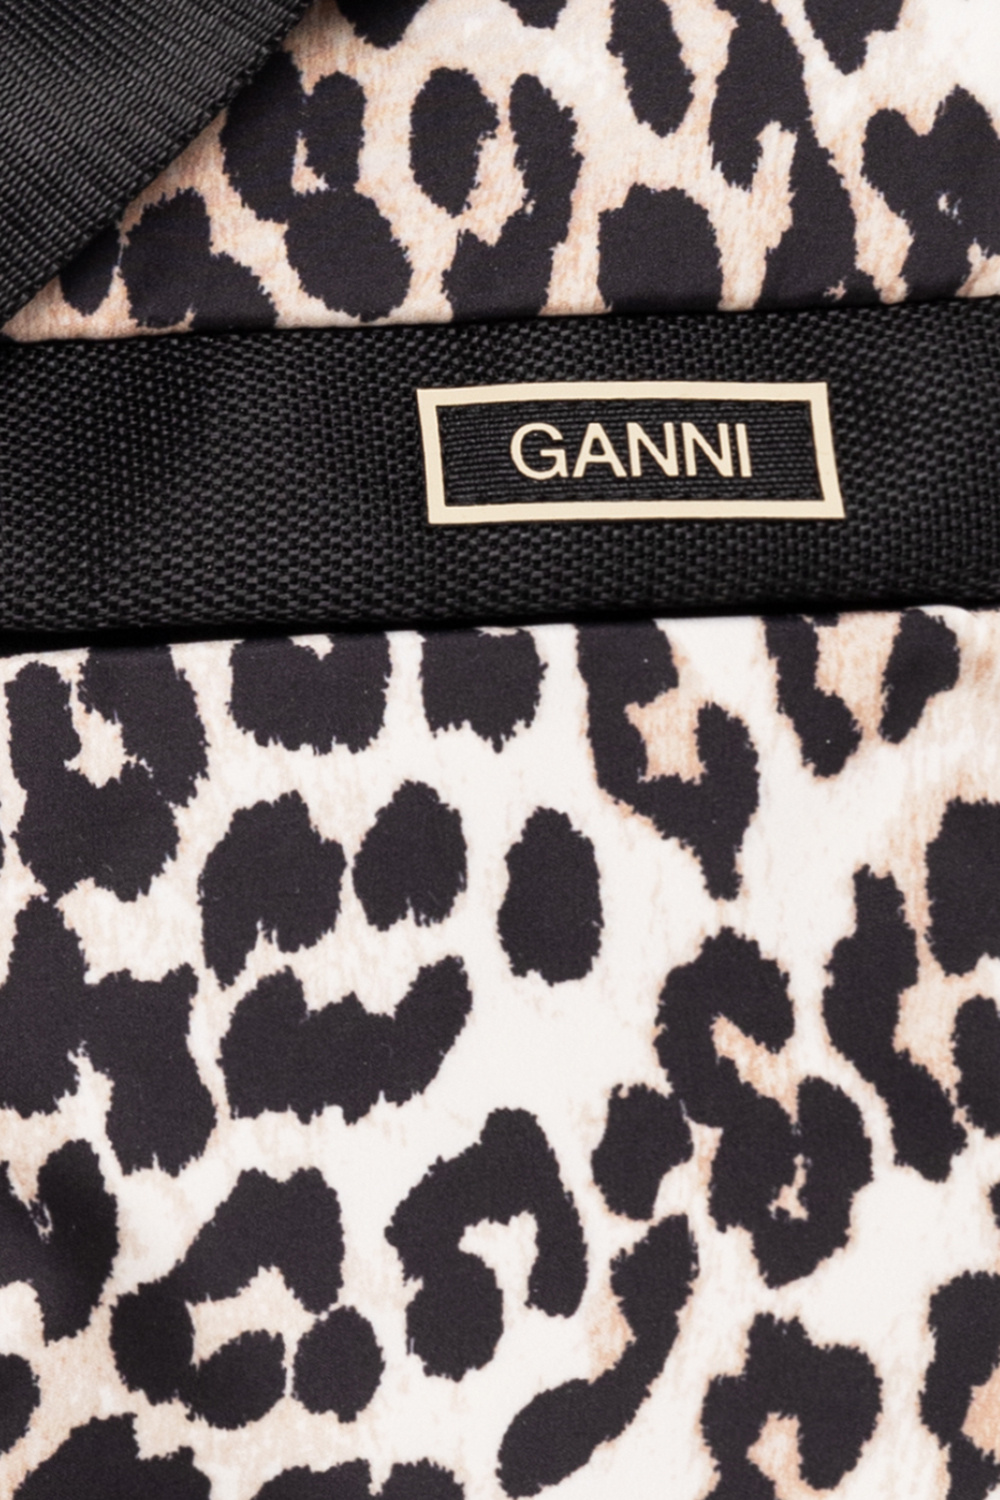 Ganni Tilly-New Camera Bag